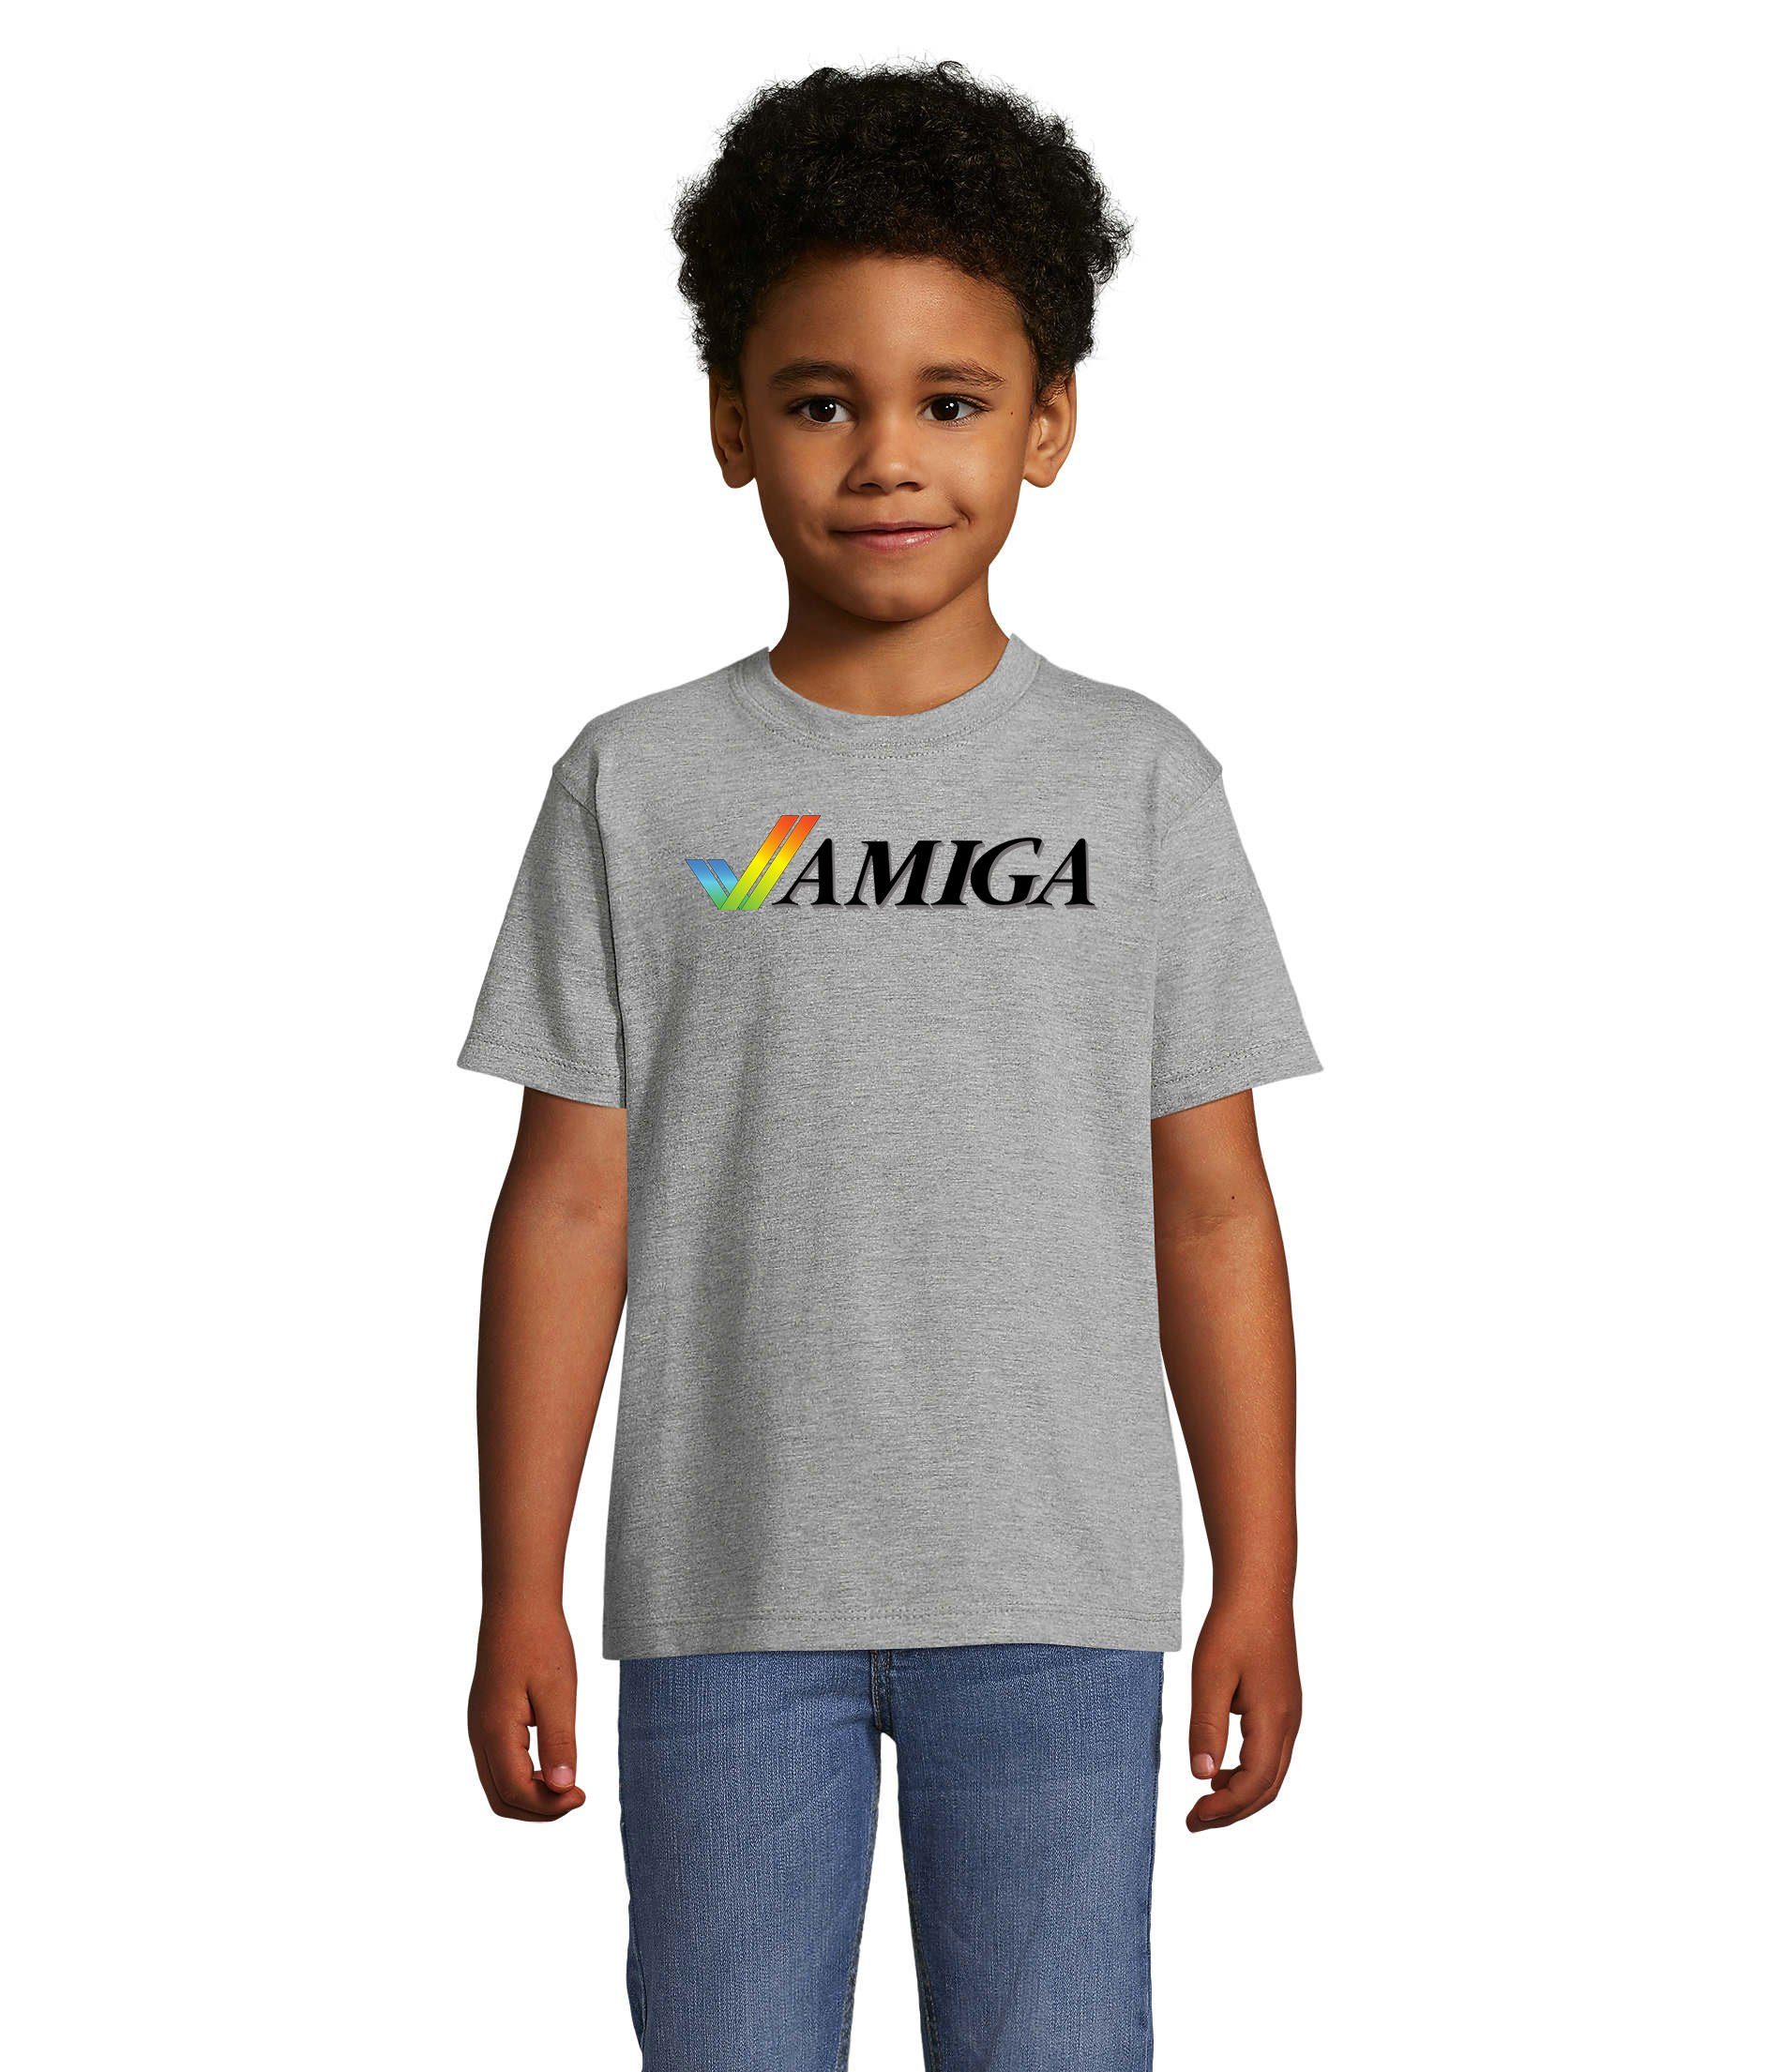 Blondie & Brownie T-Shirt Kinder Jungen & Mädchen Amiga Spiele Konsole Atari Commodore Nintendo Grau | T-Shirts